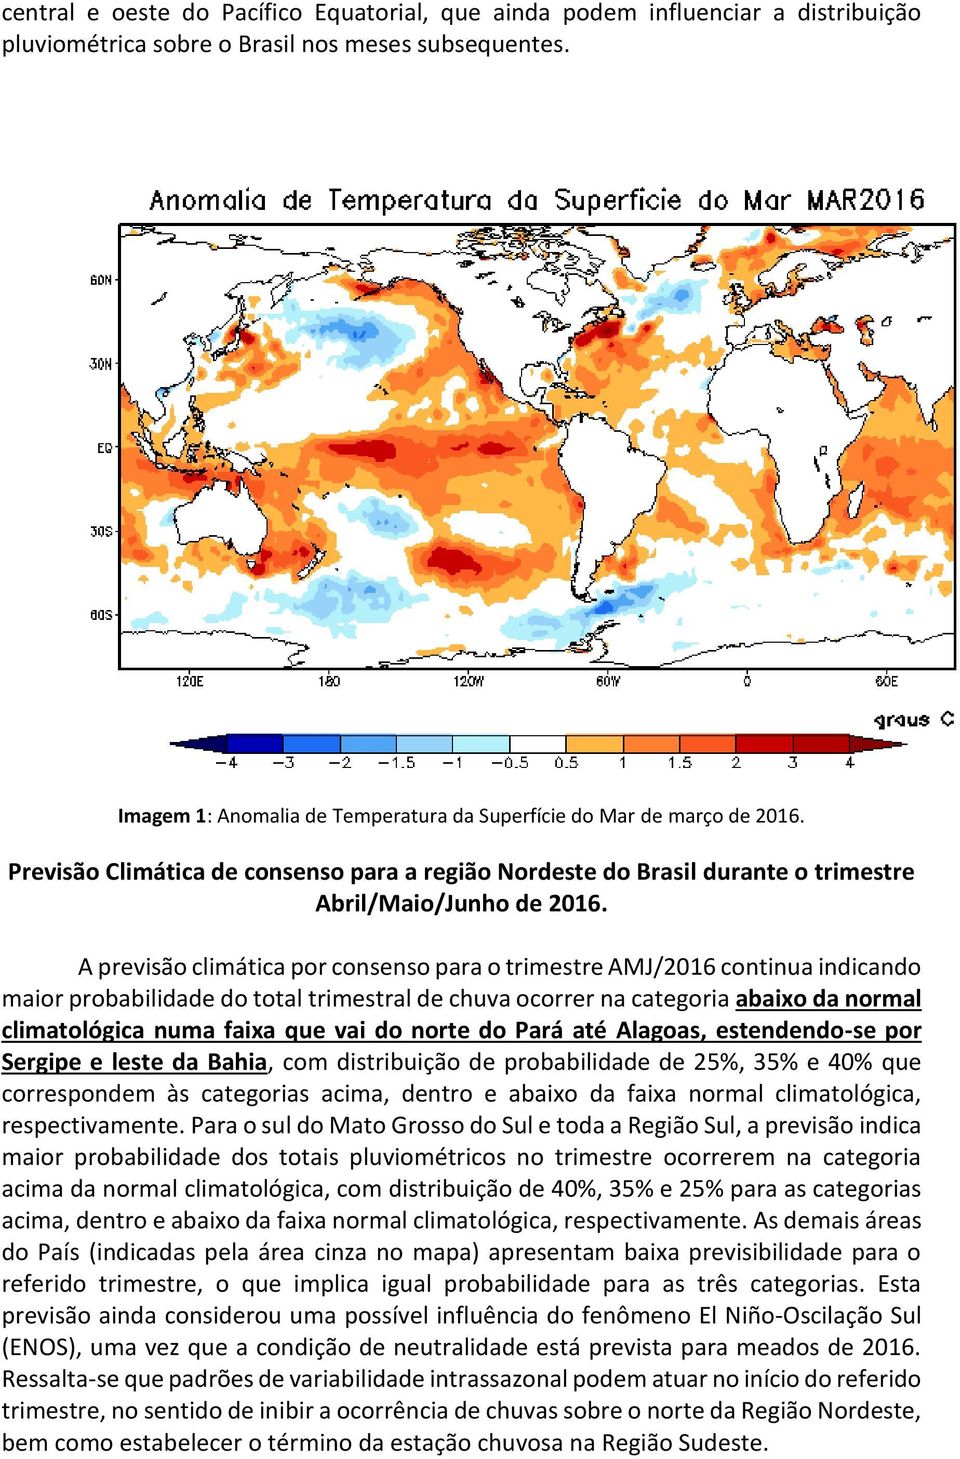 A previsão climática por consenso para o trimestre AMJ/2016 continua indicando maior probabilidade do total trimestral de chuva ocorrer na categoria abaixo da normal climatológica numa faixa que vai